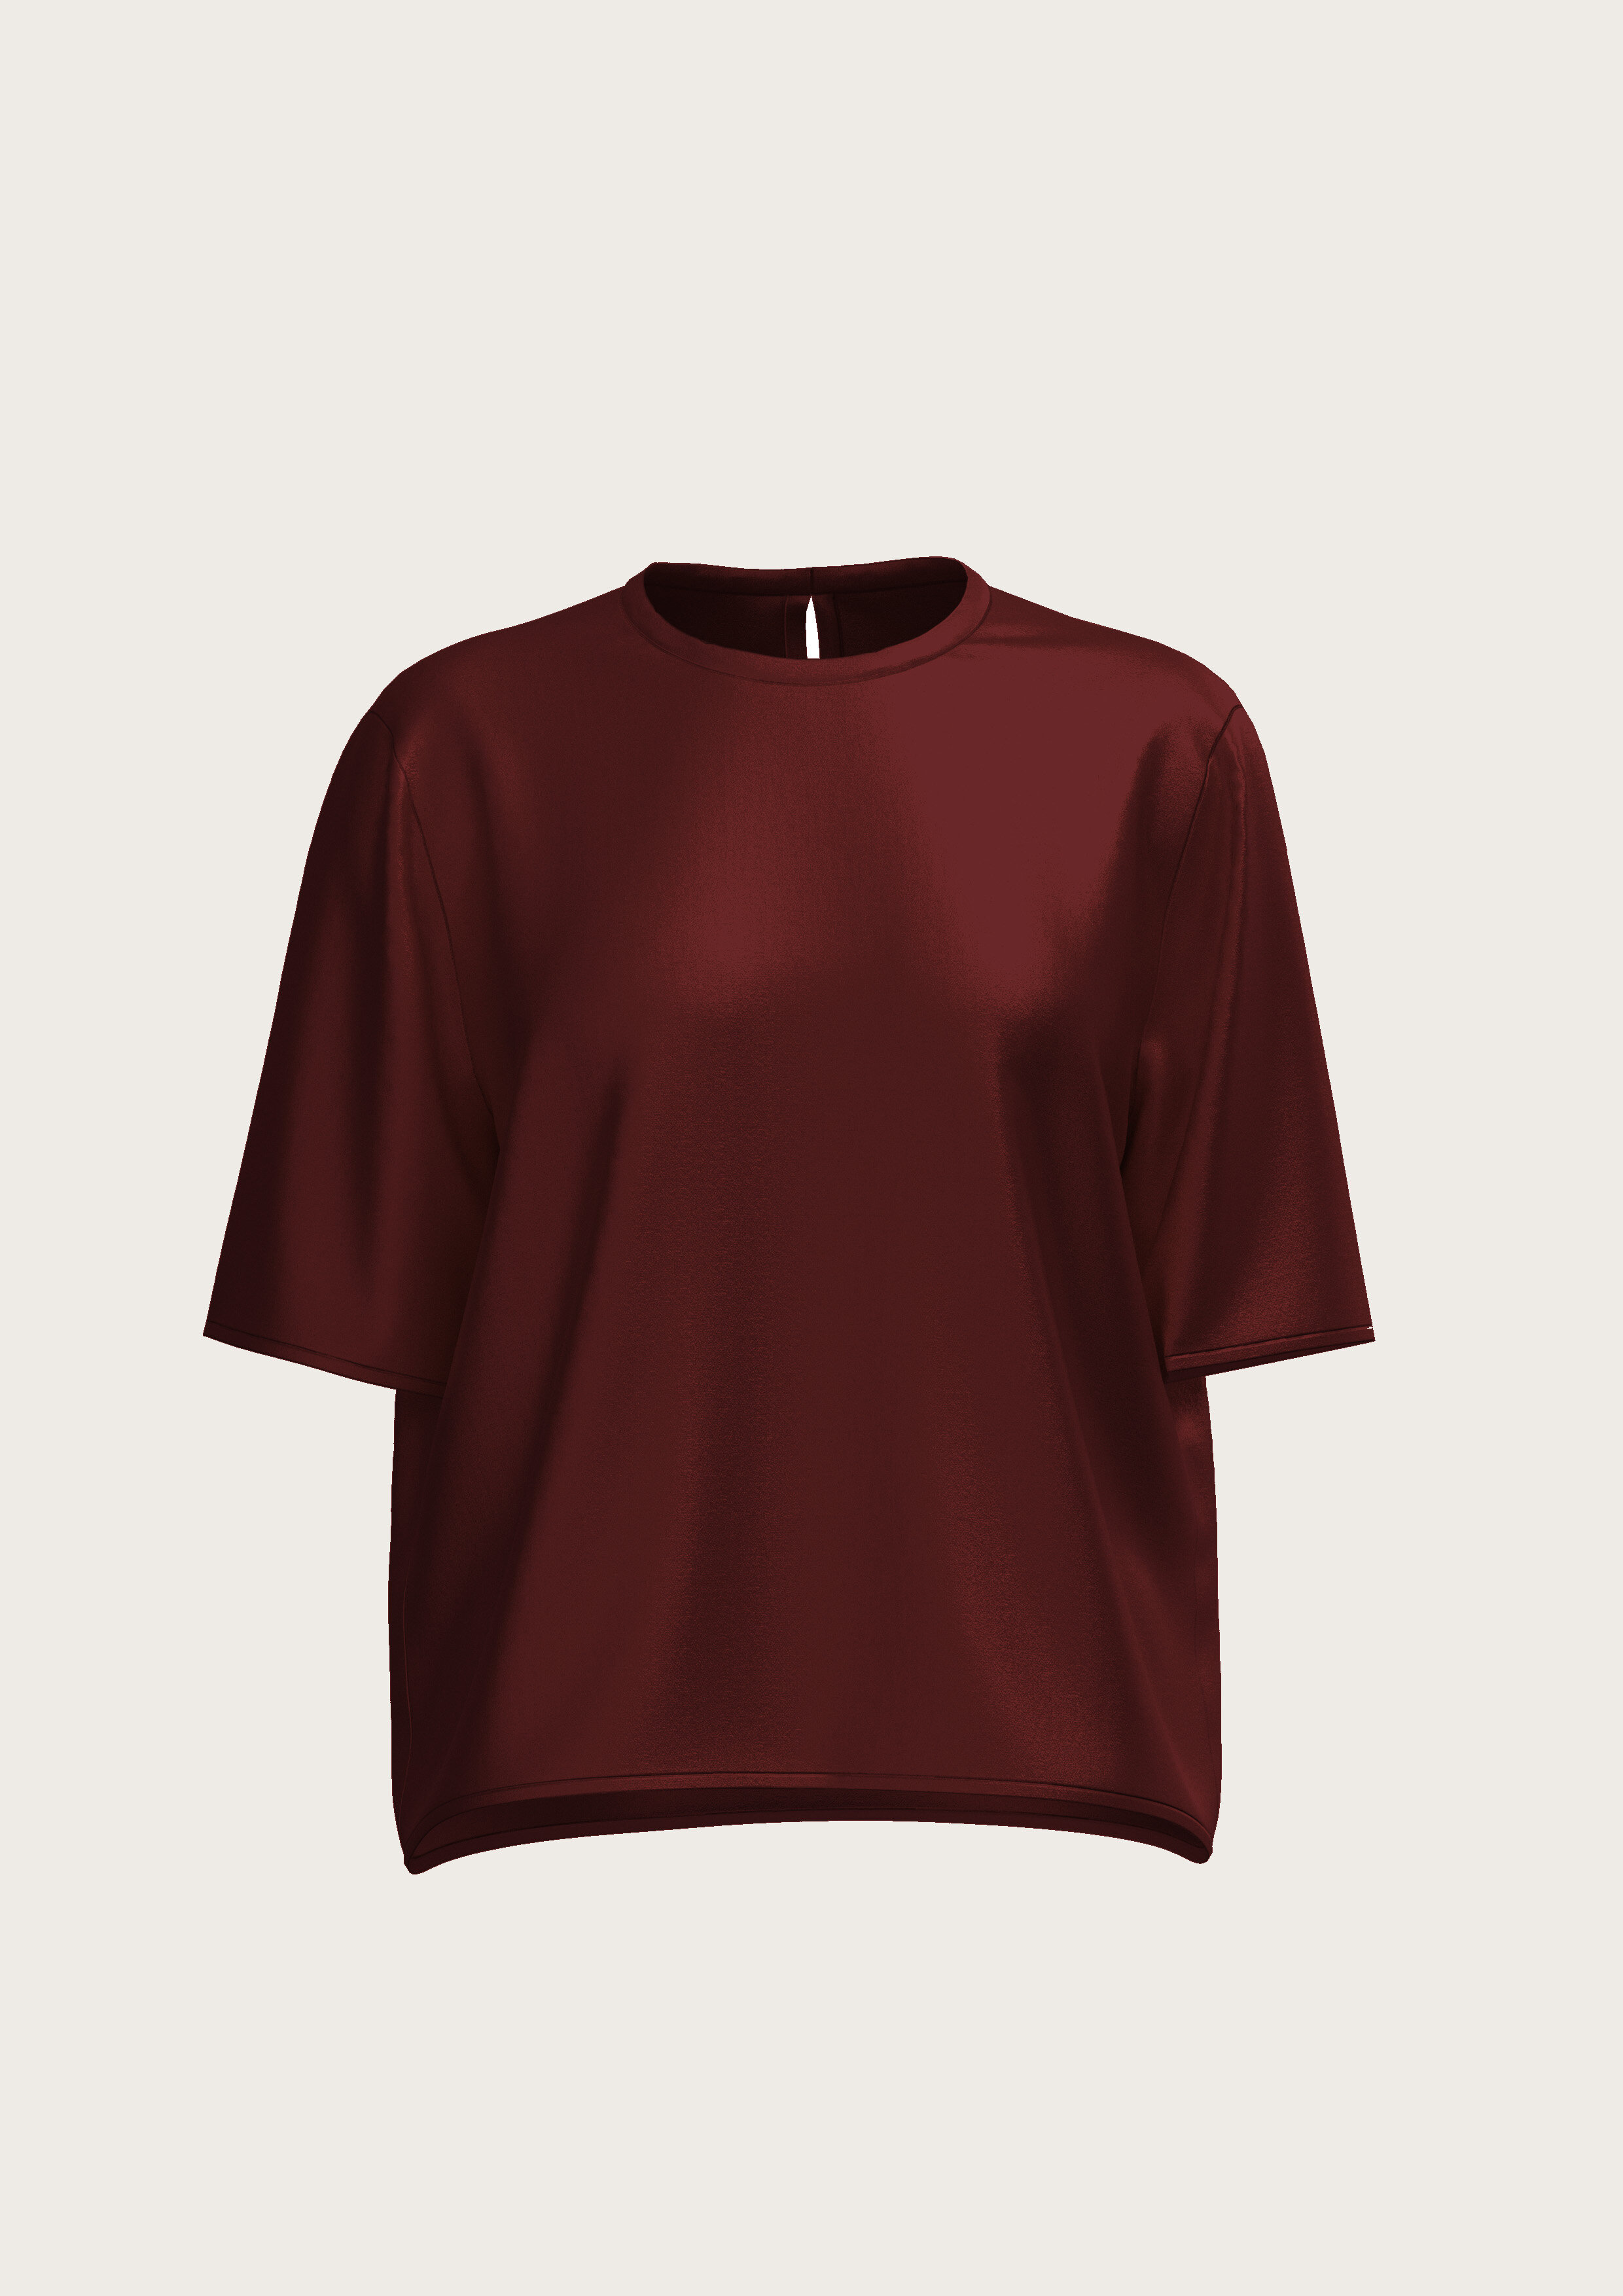 Silk T-Shirt in Bordeaux (Kopie)